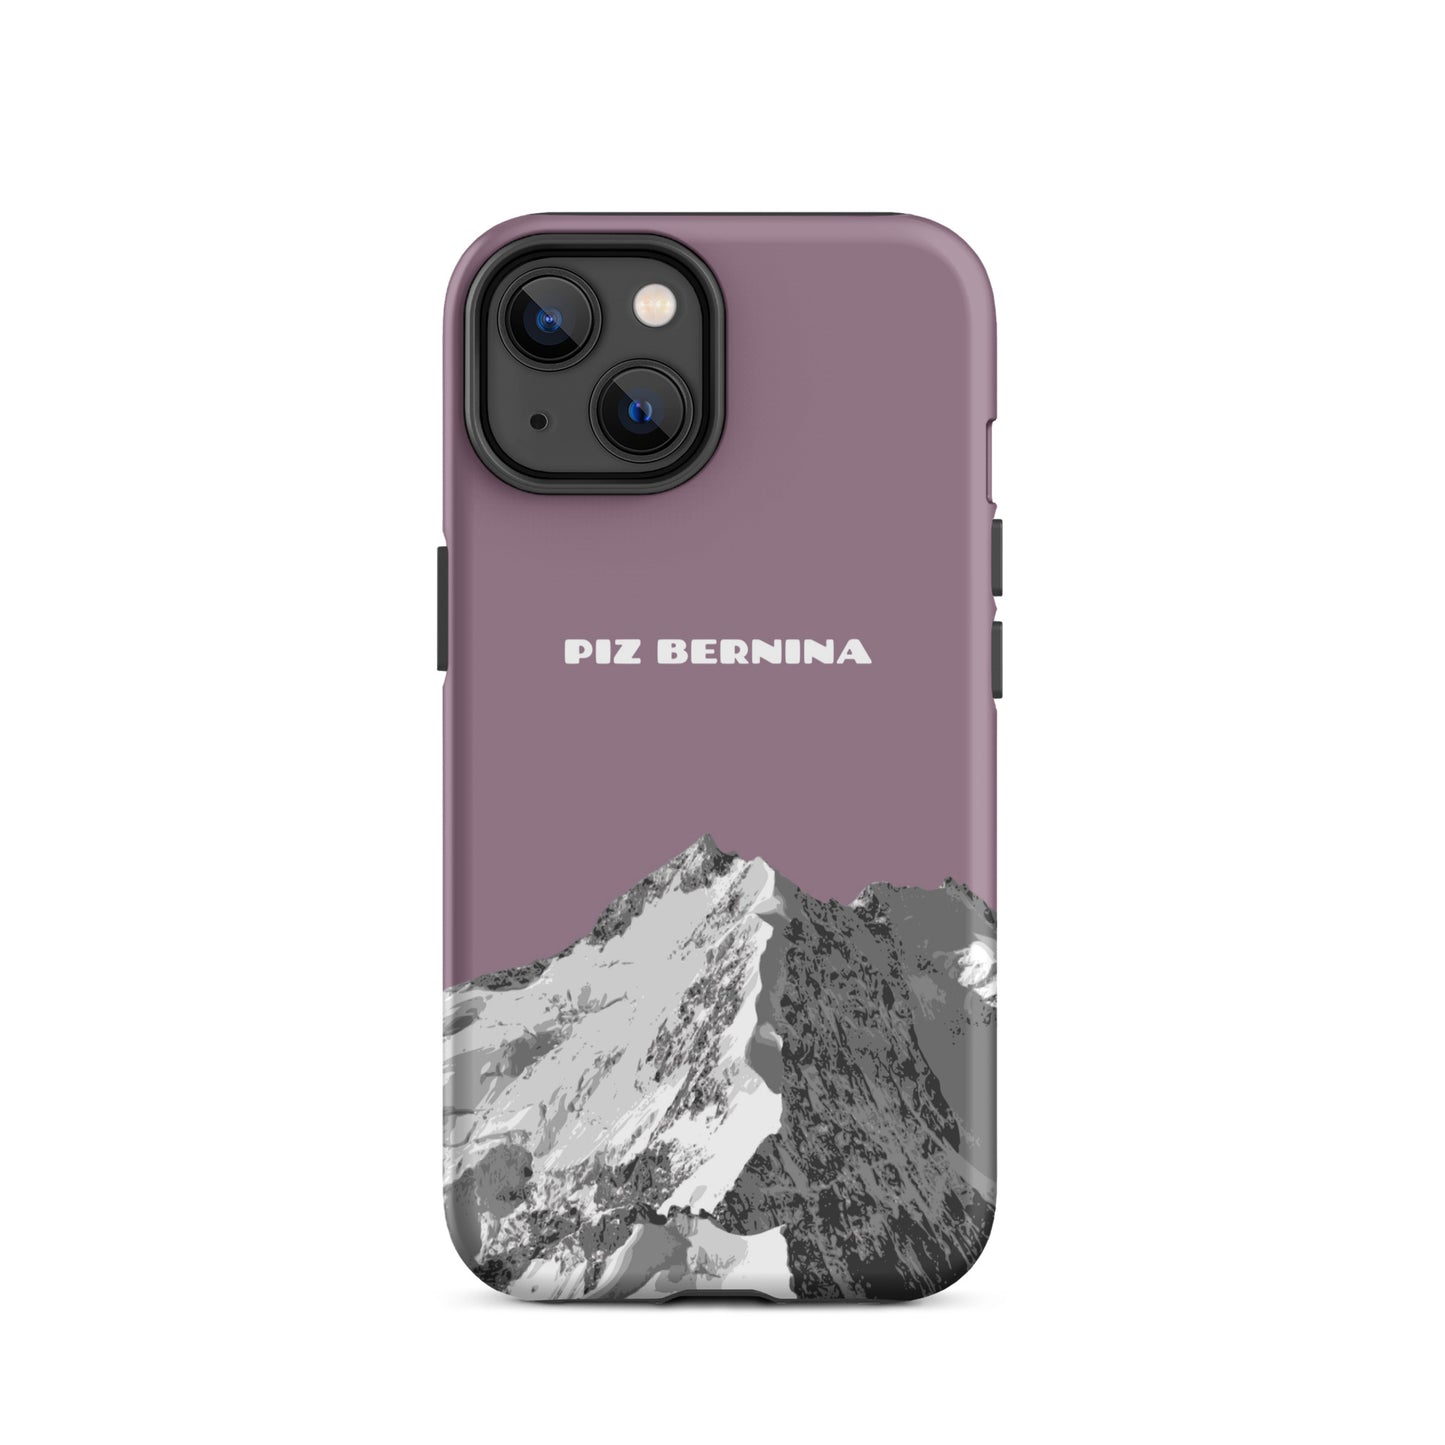 Hülle für das iPhone 14 von Apple in der Farbe Pastellviolett, dass den Piz Bernina in Graubünden zeigt.